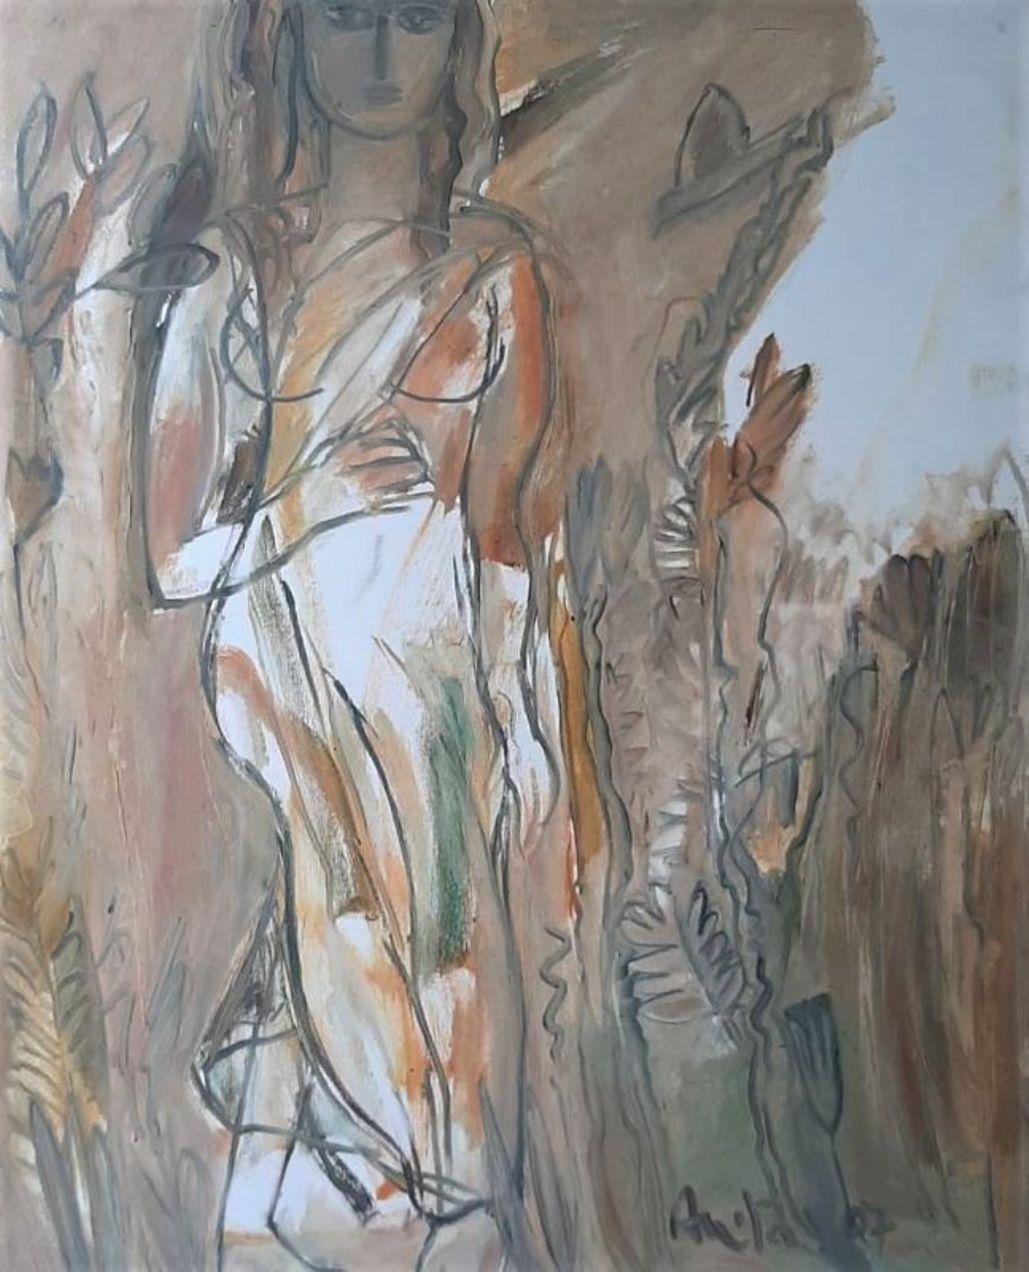 Mother Nature, Öl auf Leinwand von indischer moderner Künstlerin, „Auf Lager“ – Painting von Anita Roy Chowdhury